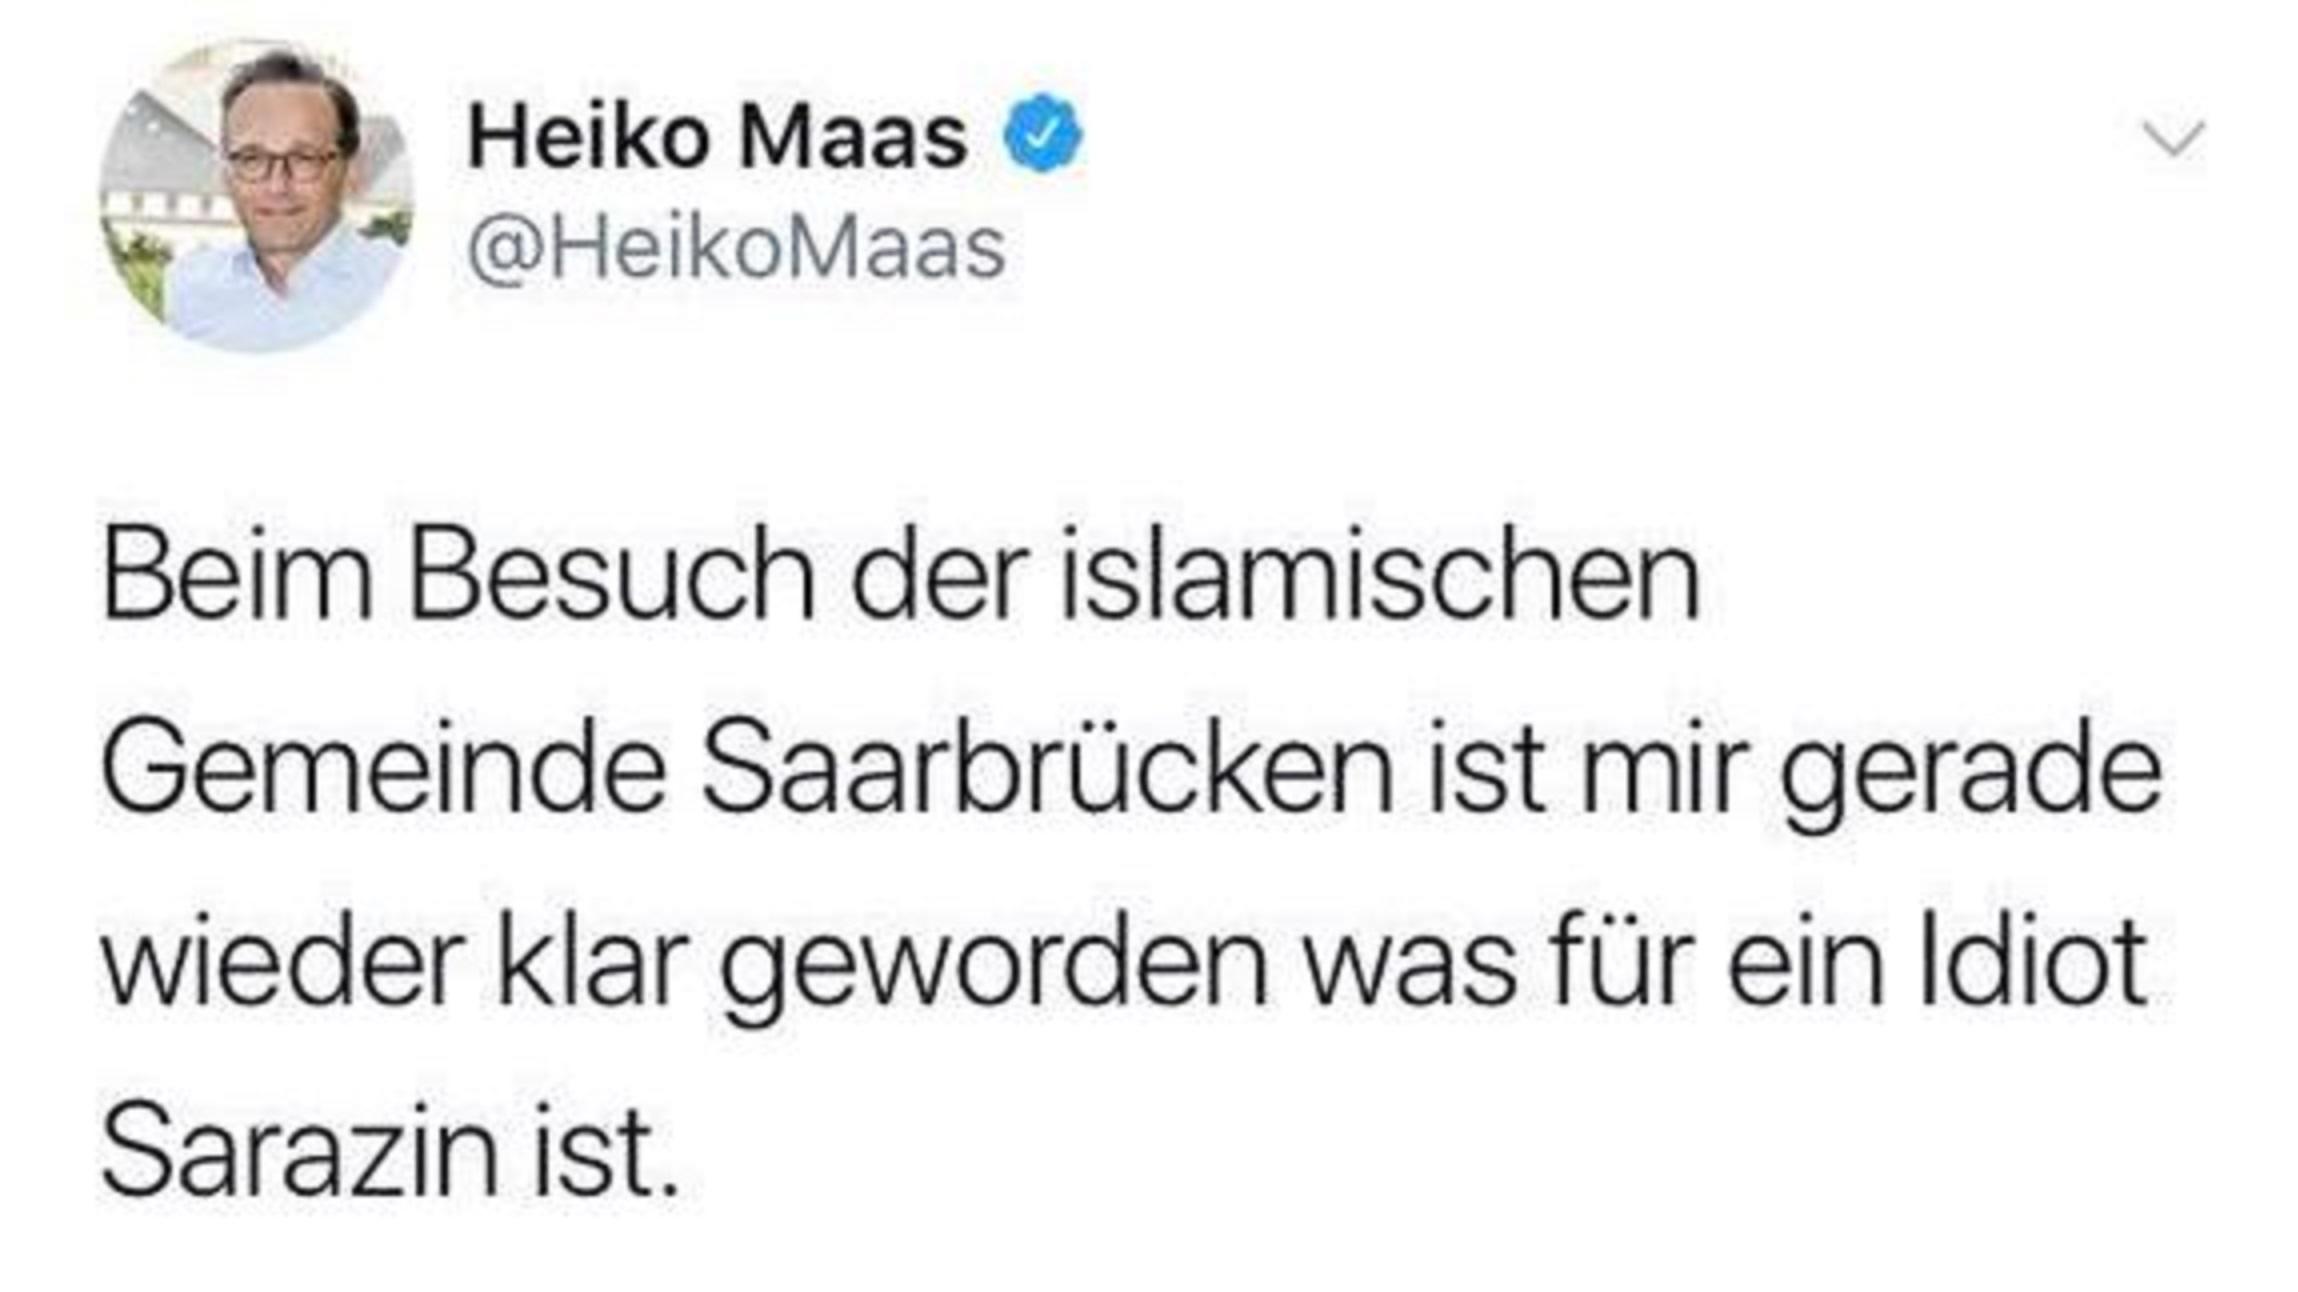 Wurde dieser Tweet von Heiko Maas gelöscht?